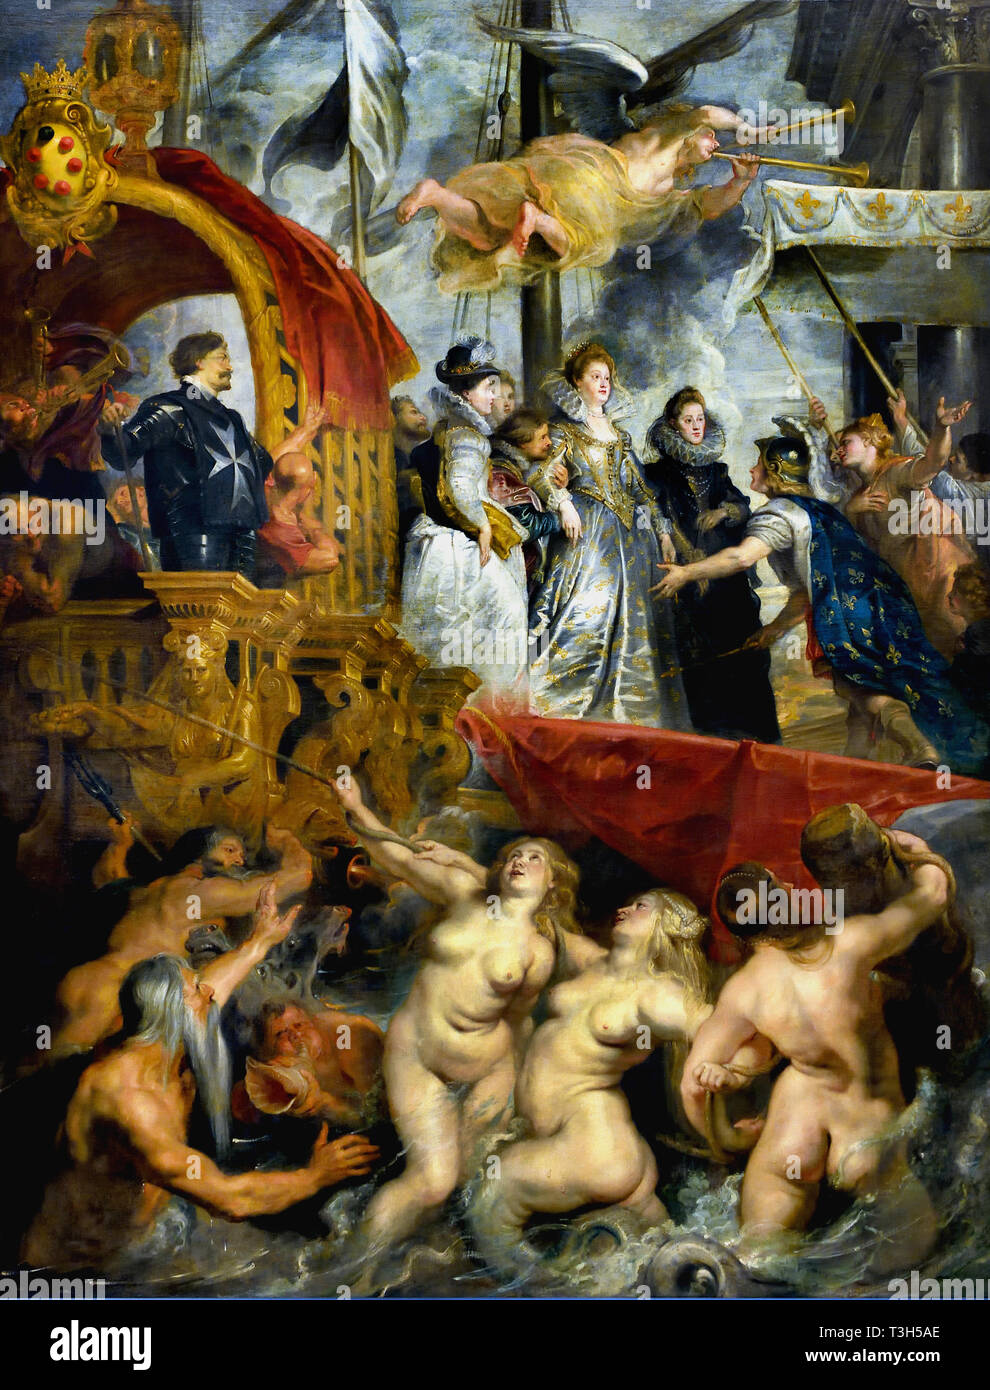 Lo sbarco a Marsiglia - La Marie de' Medici 1622-1624 ciclo da Peter Paul Rubens commissionata dalla regina Maria de' Medici, vedova del re Enrico IV di Francia, per il Palazzo del Lussemburgo a Parigi,(di seguito, Poseidone, tre nereidi, un mare-dio e Triton salire dal mare). Foto Stock